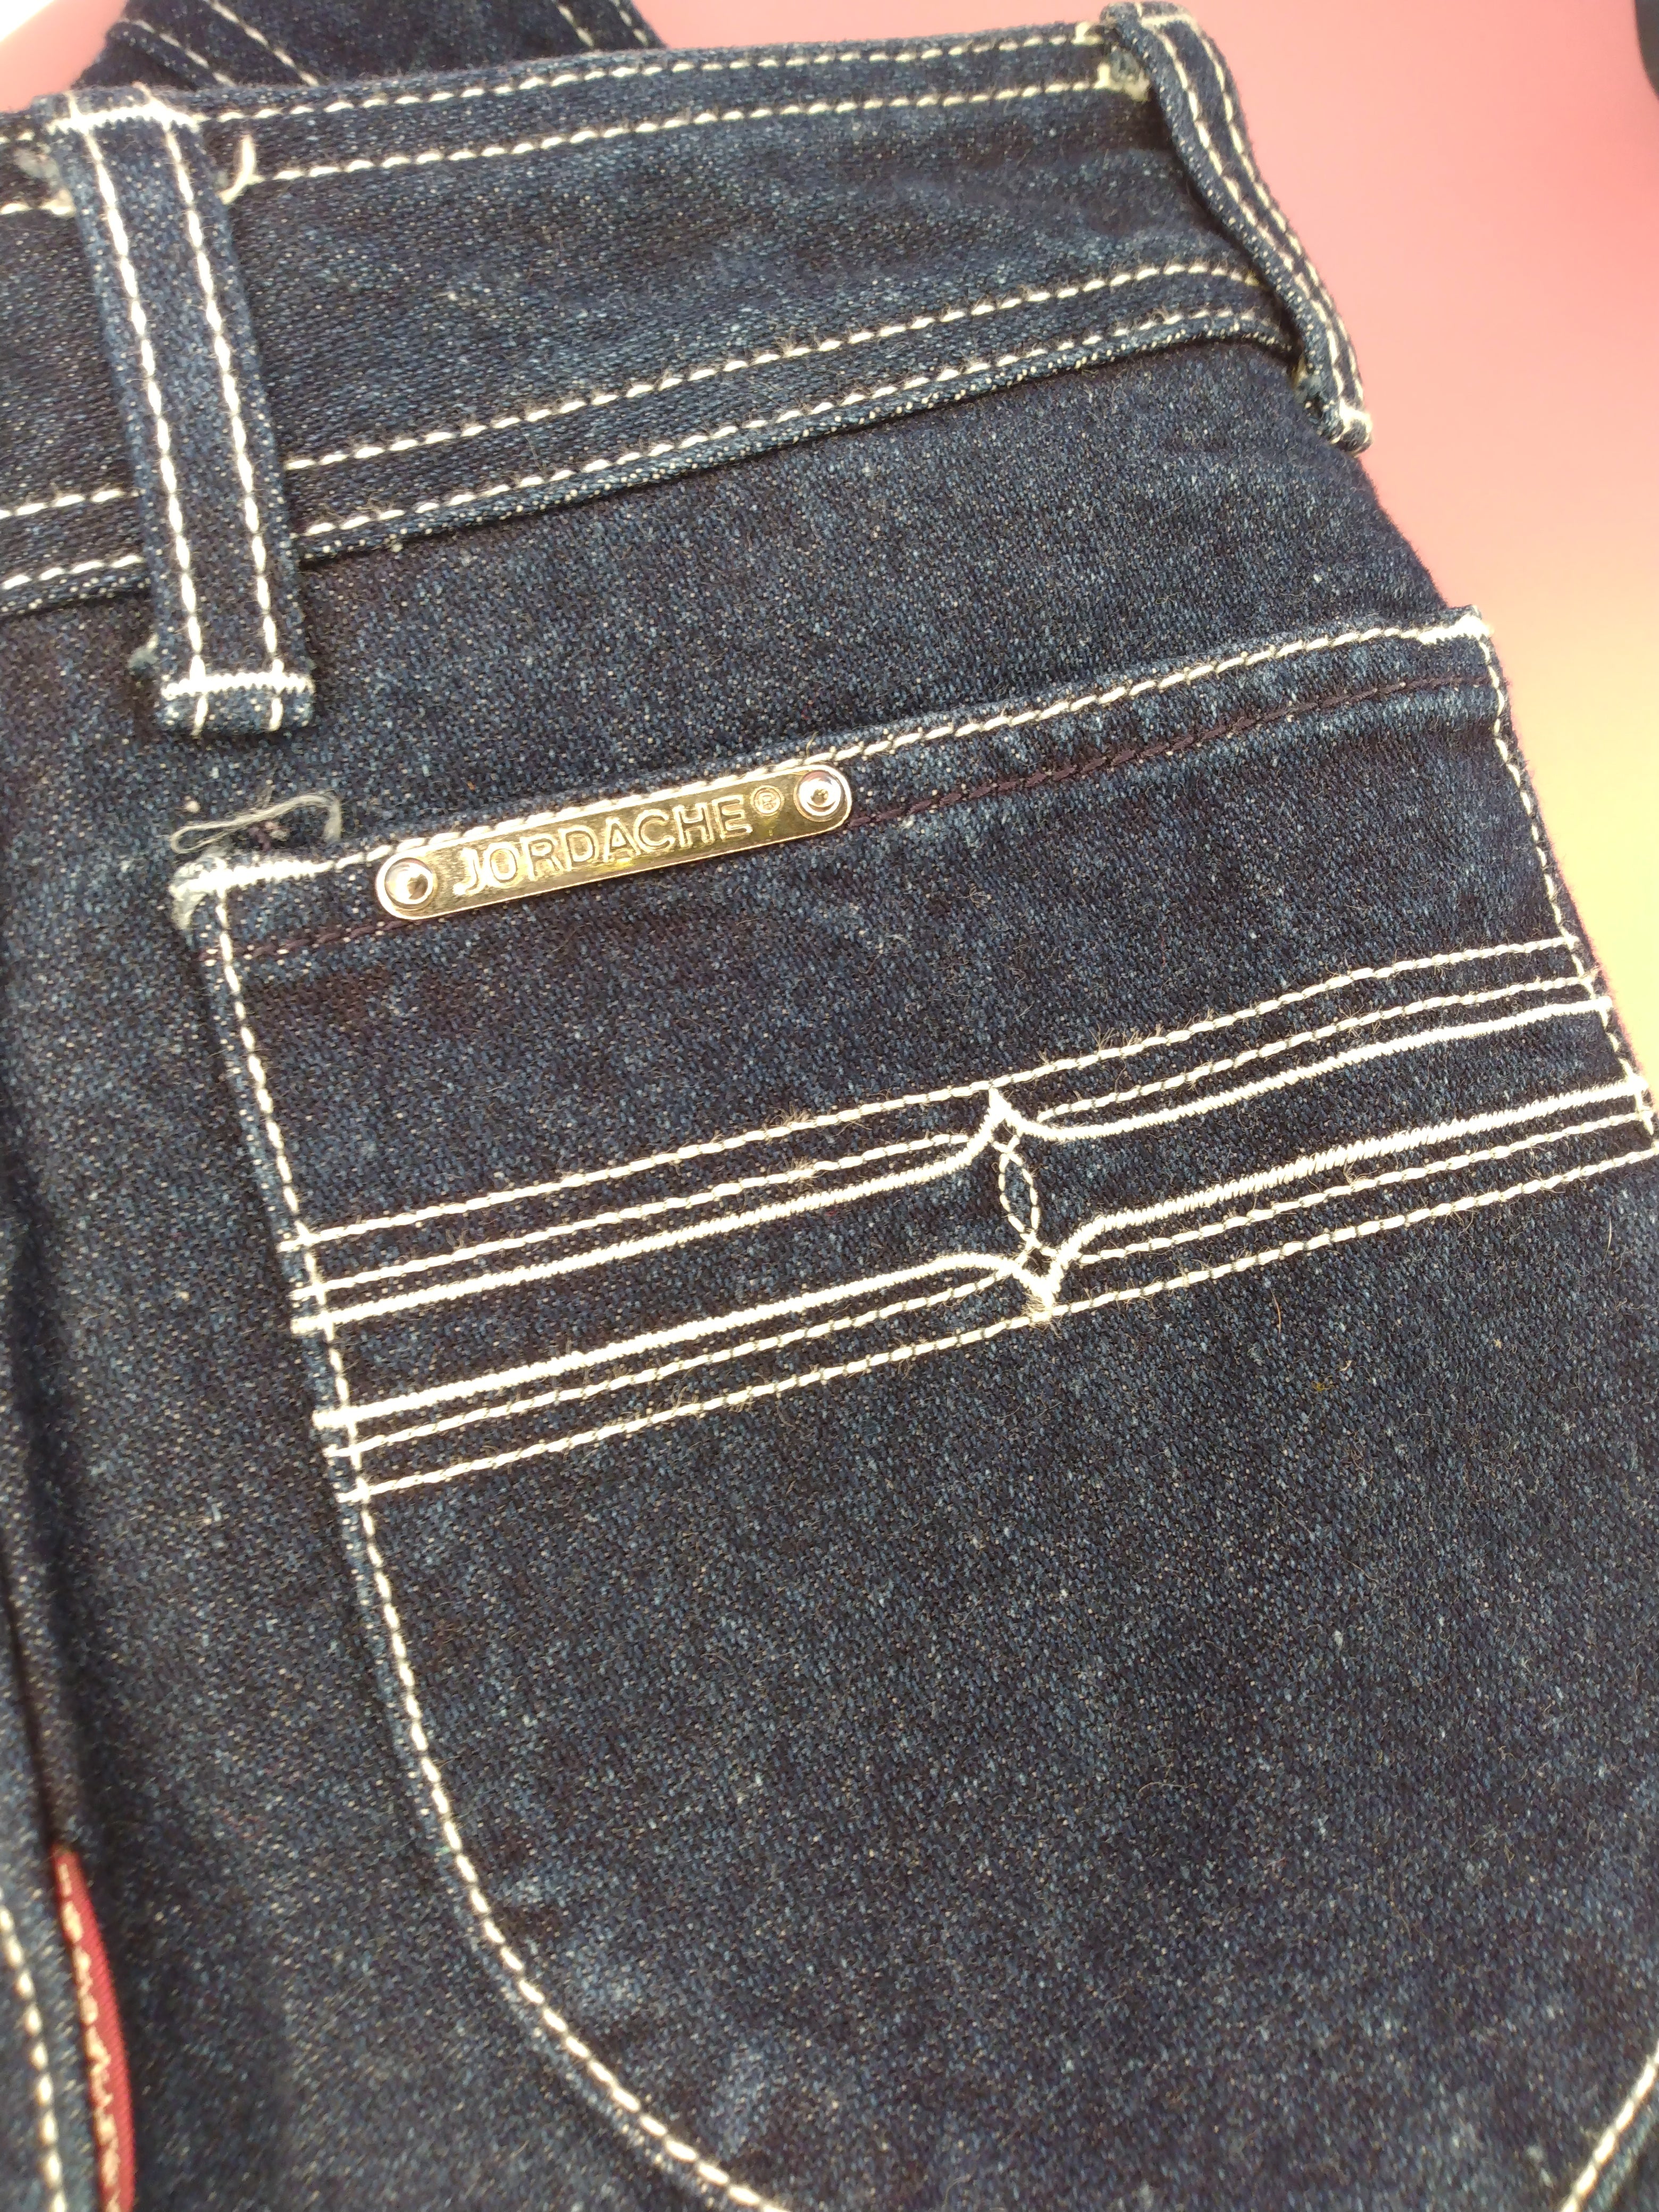 Early 80s jordache jeans –